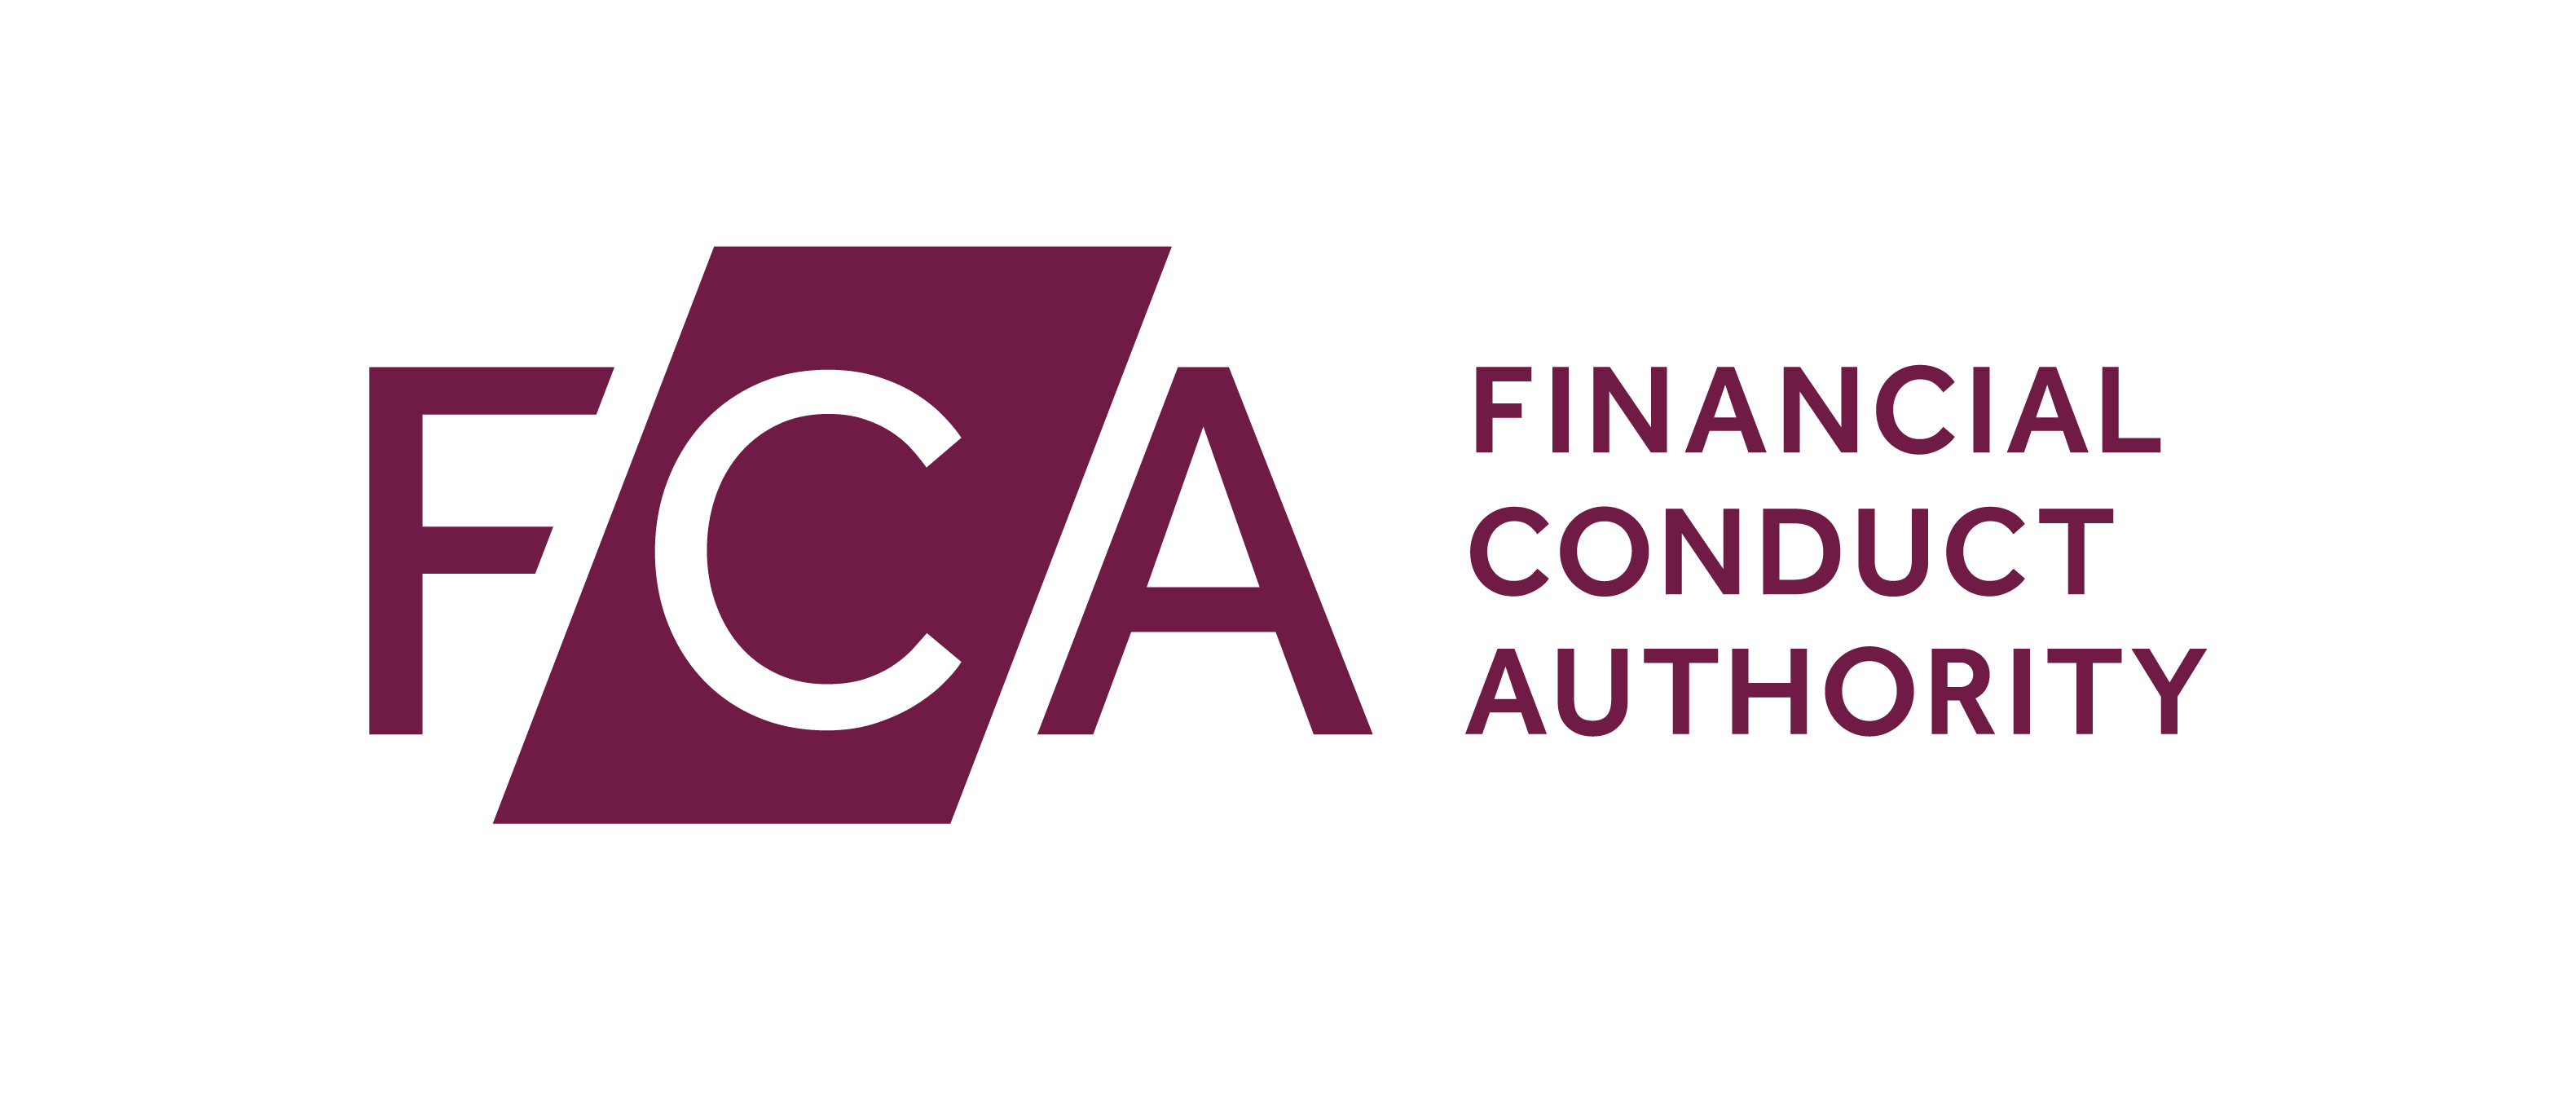 Вб е. Financial conduct Authority. FCA. Управление по финансовому регулированию и надзору Великобритании. FCA logo.